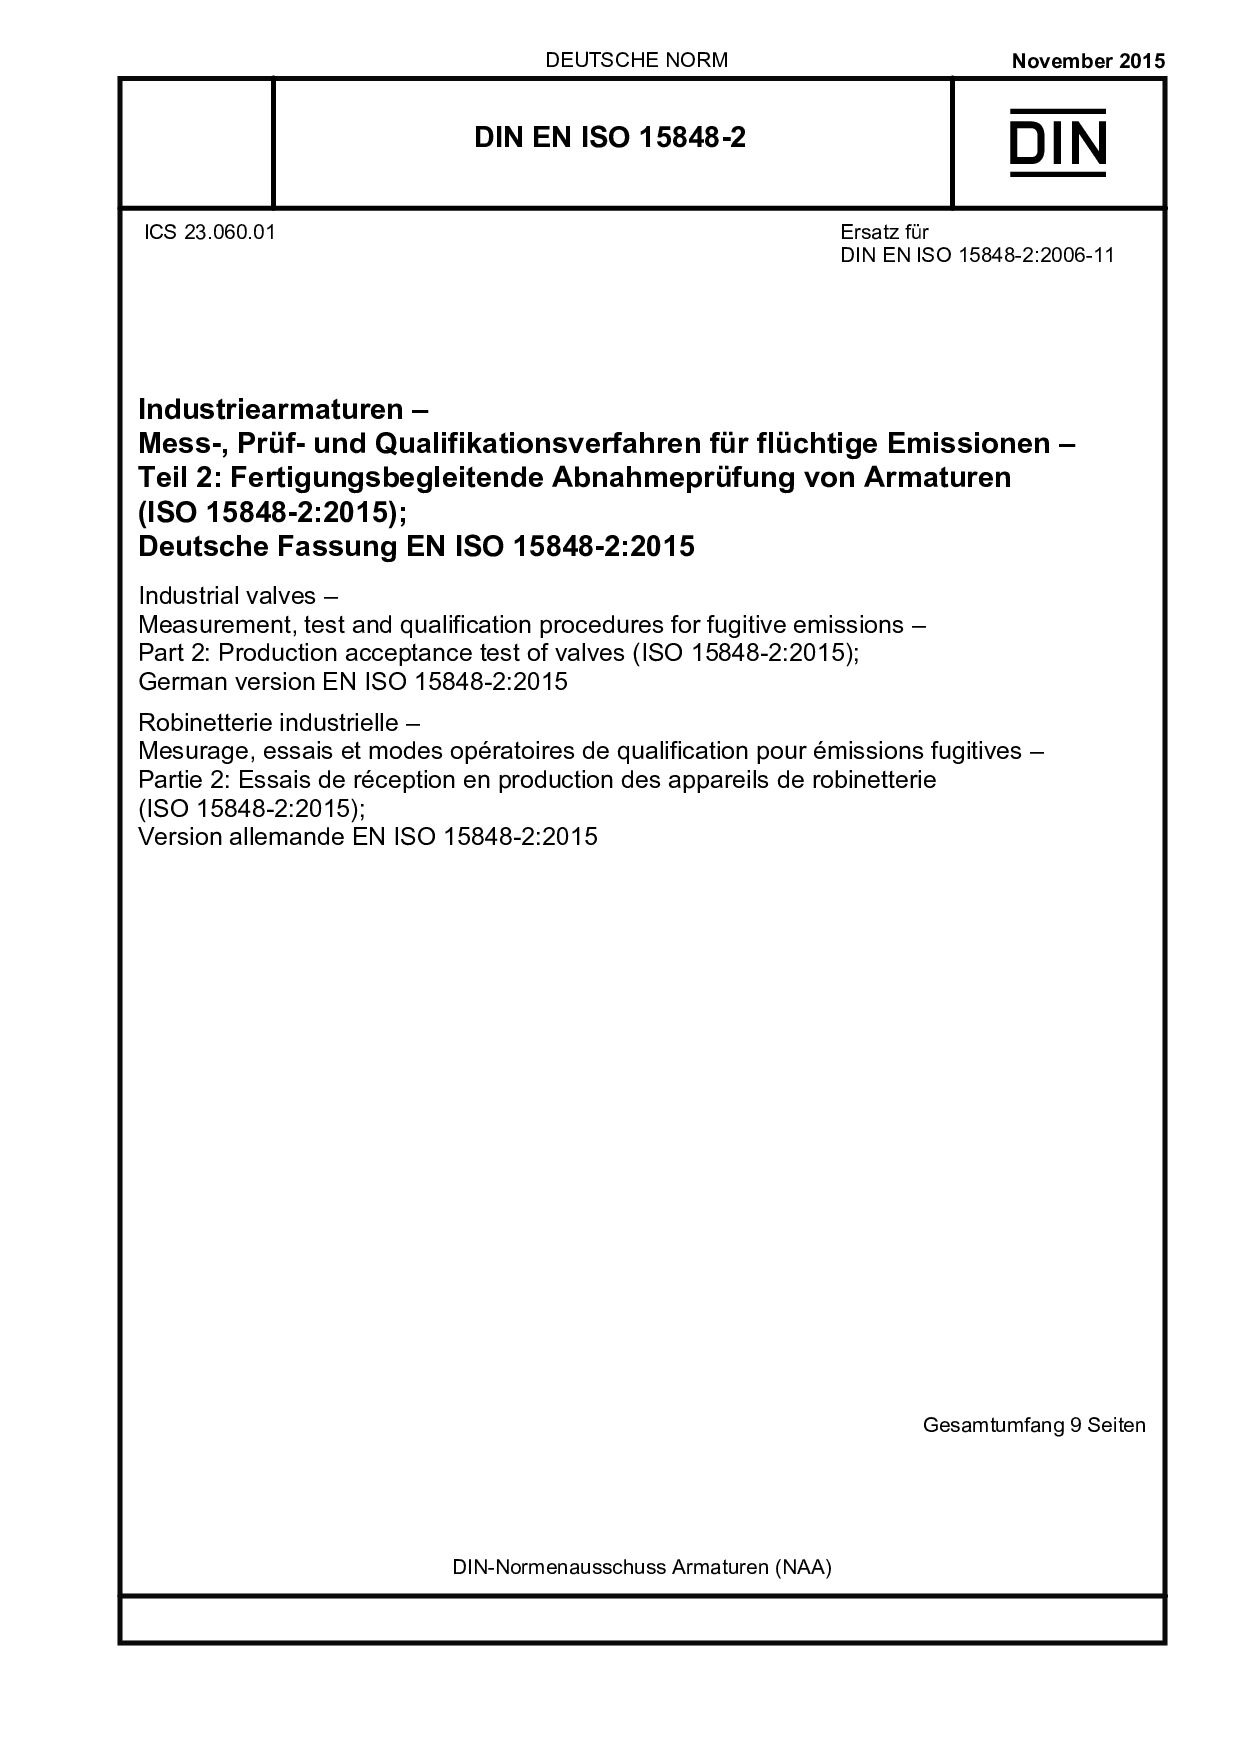 DIN EN ISO 15848-2:2015封面图